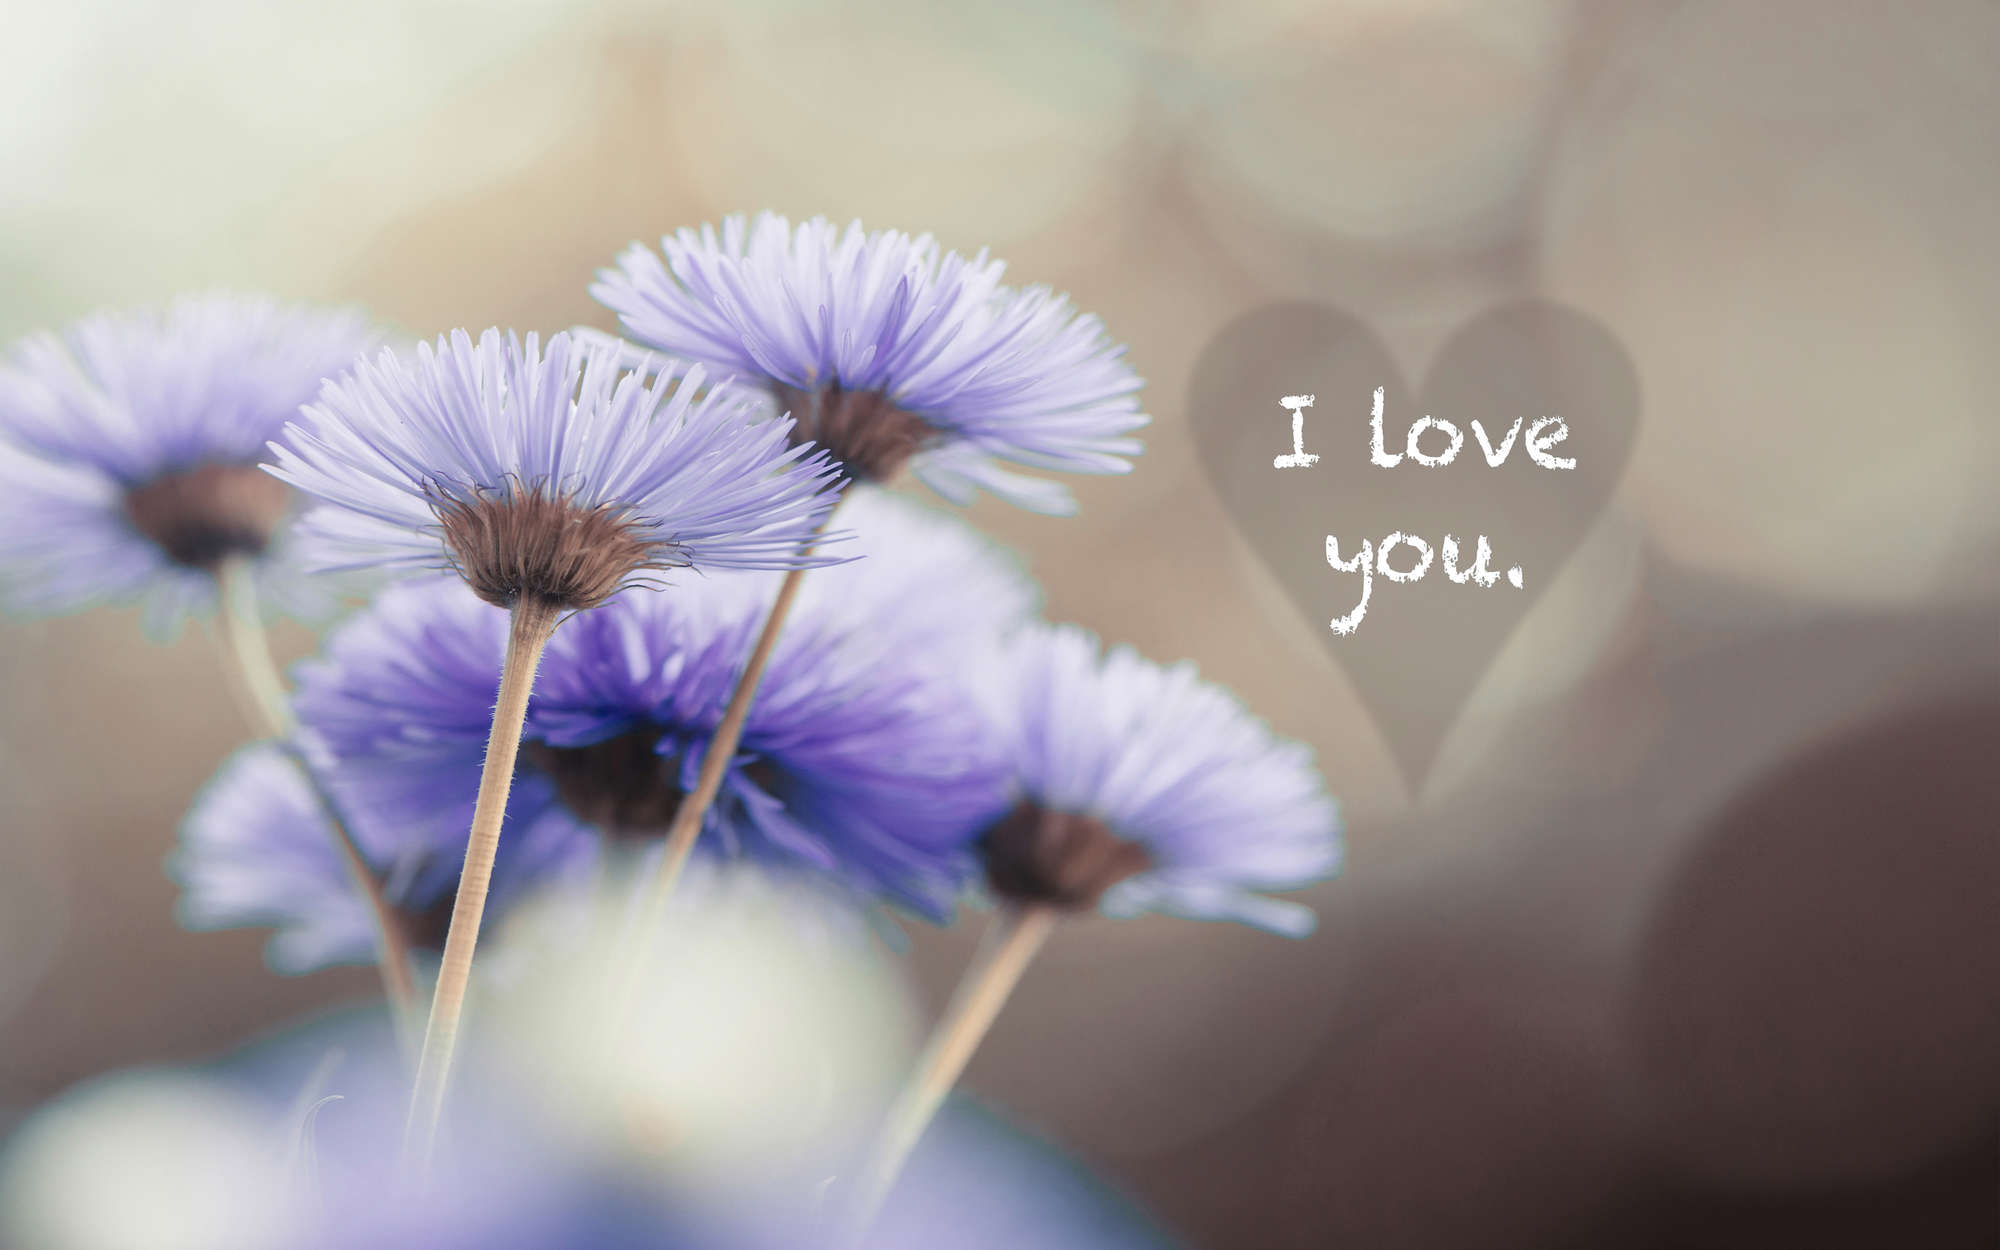             Digital behang bloemen in violet met opschrift "I love you" - Premium glad fleece
        